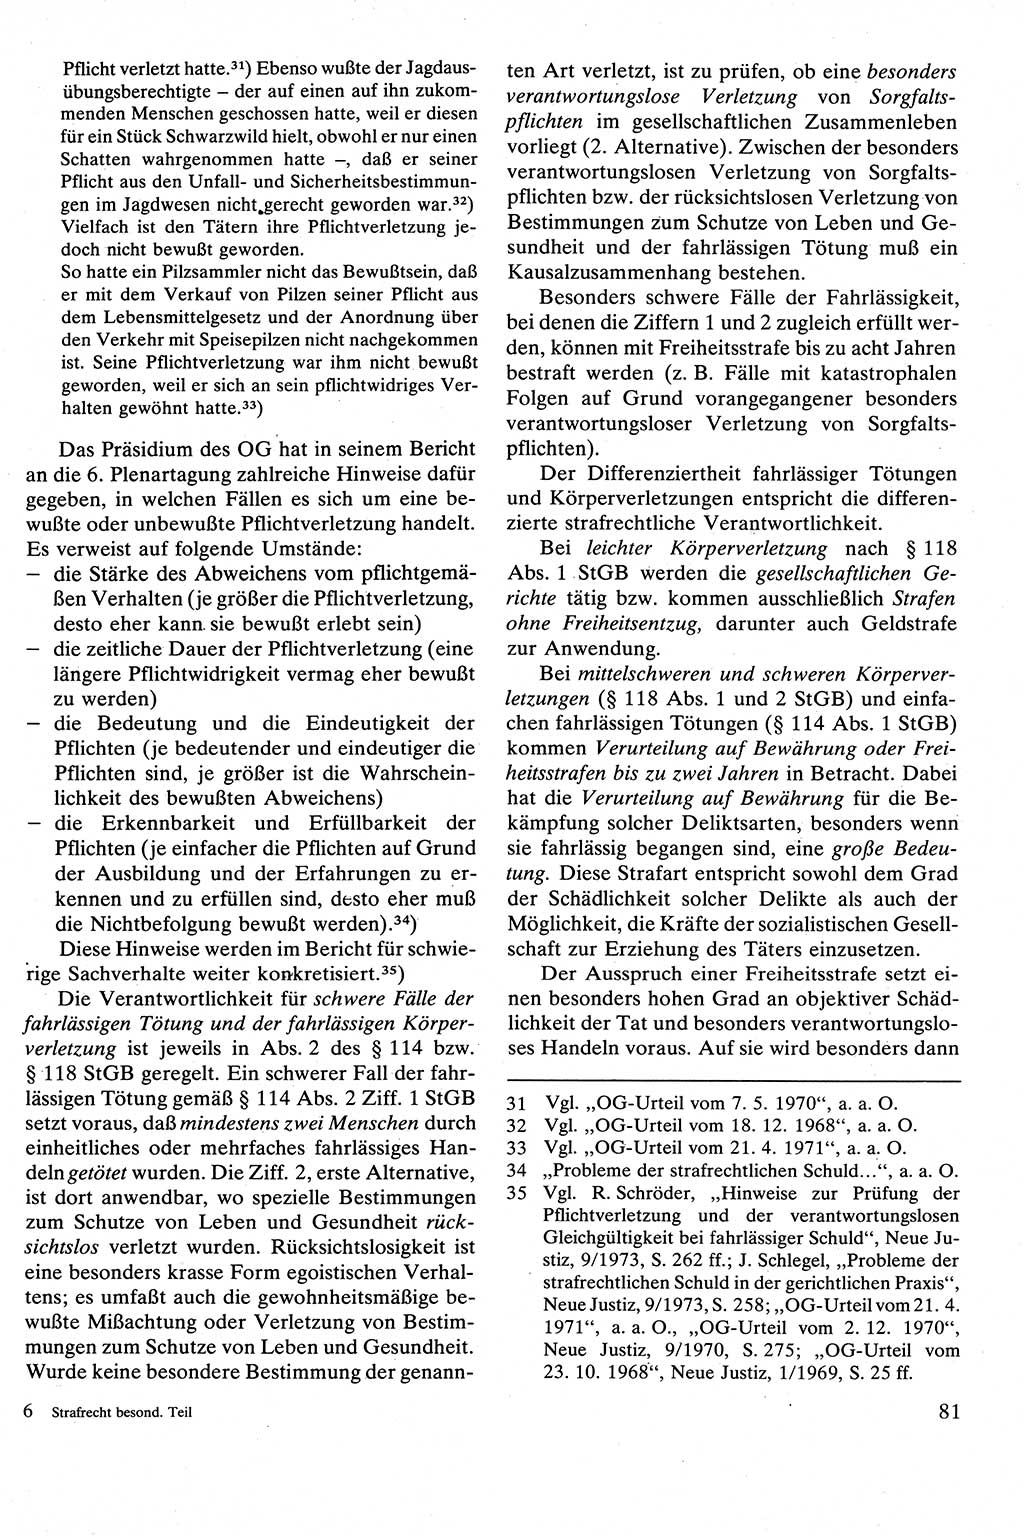 Strafrecht [Deutsche Demokratische Republik (DDR)], Besonderer Teil, Lehrbuch 1981, Seite 81 (Strafr. DDR BT Lb. 1981, S. 81)